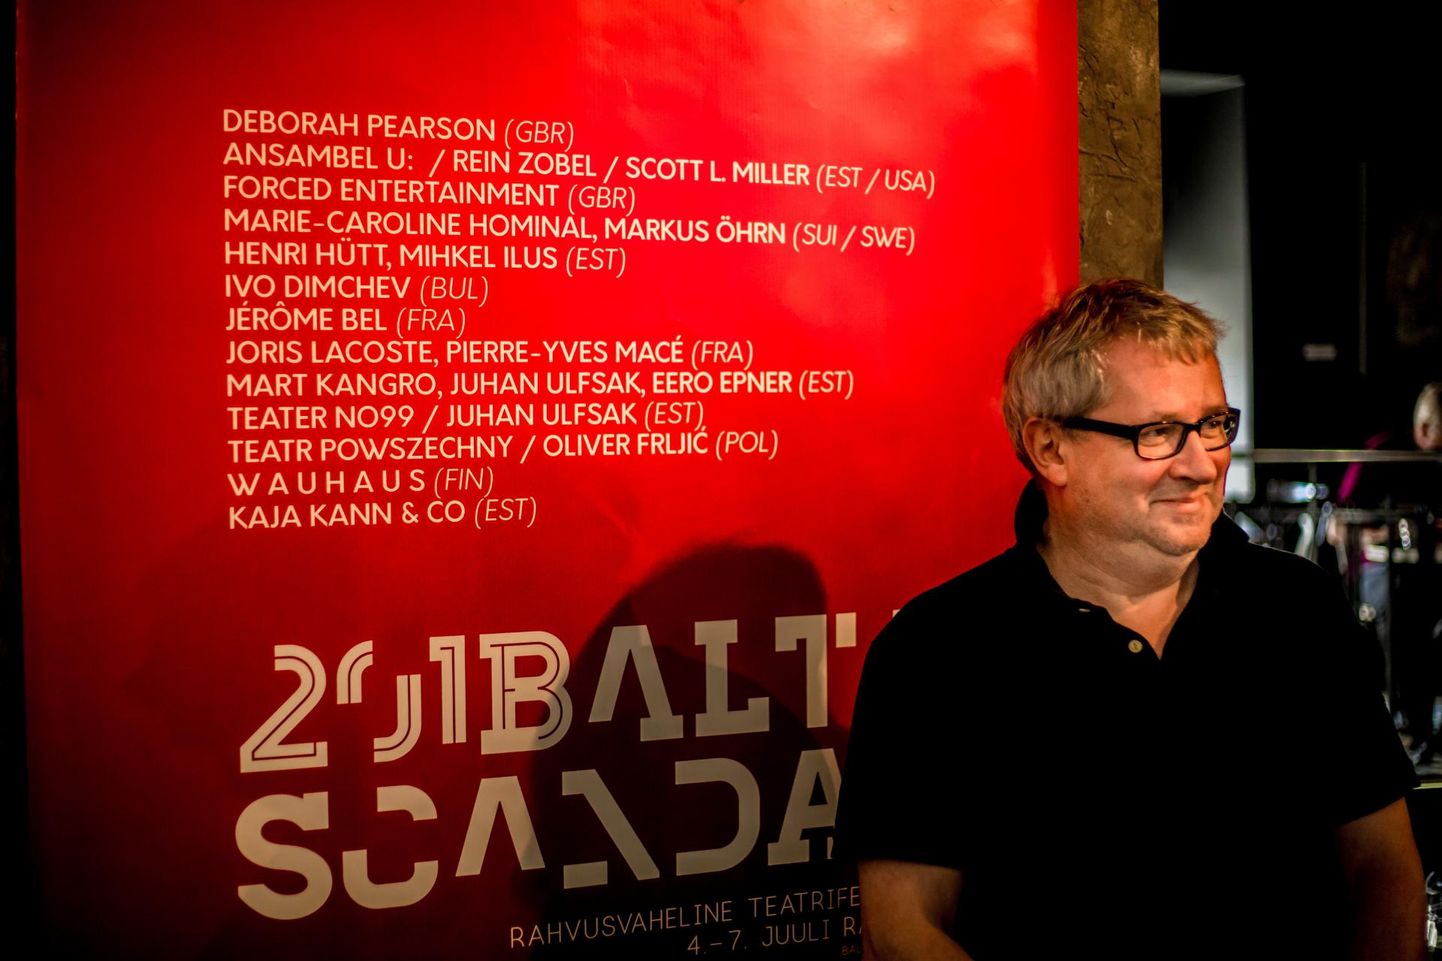 Rahvusvahelise teatrifestivali Baltoscandal kunstiline juht Priit Raud.